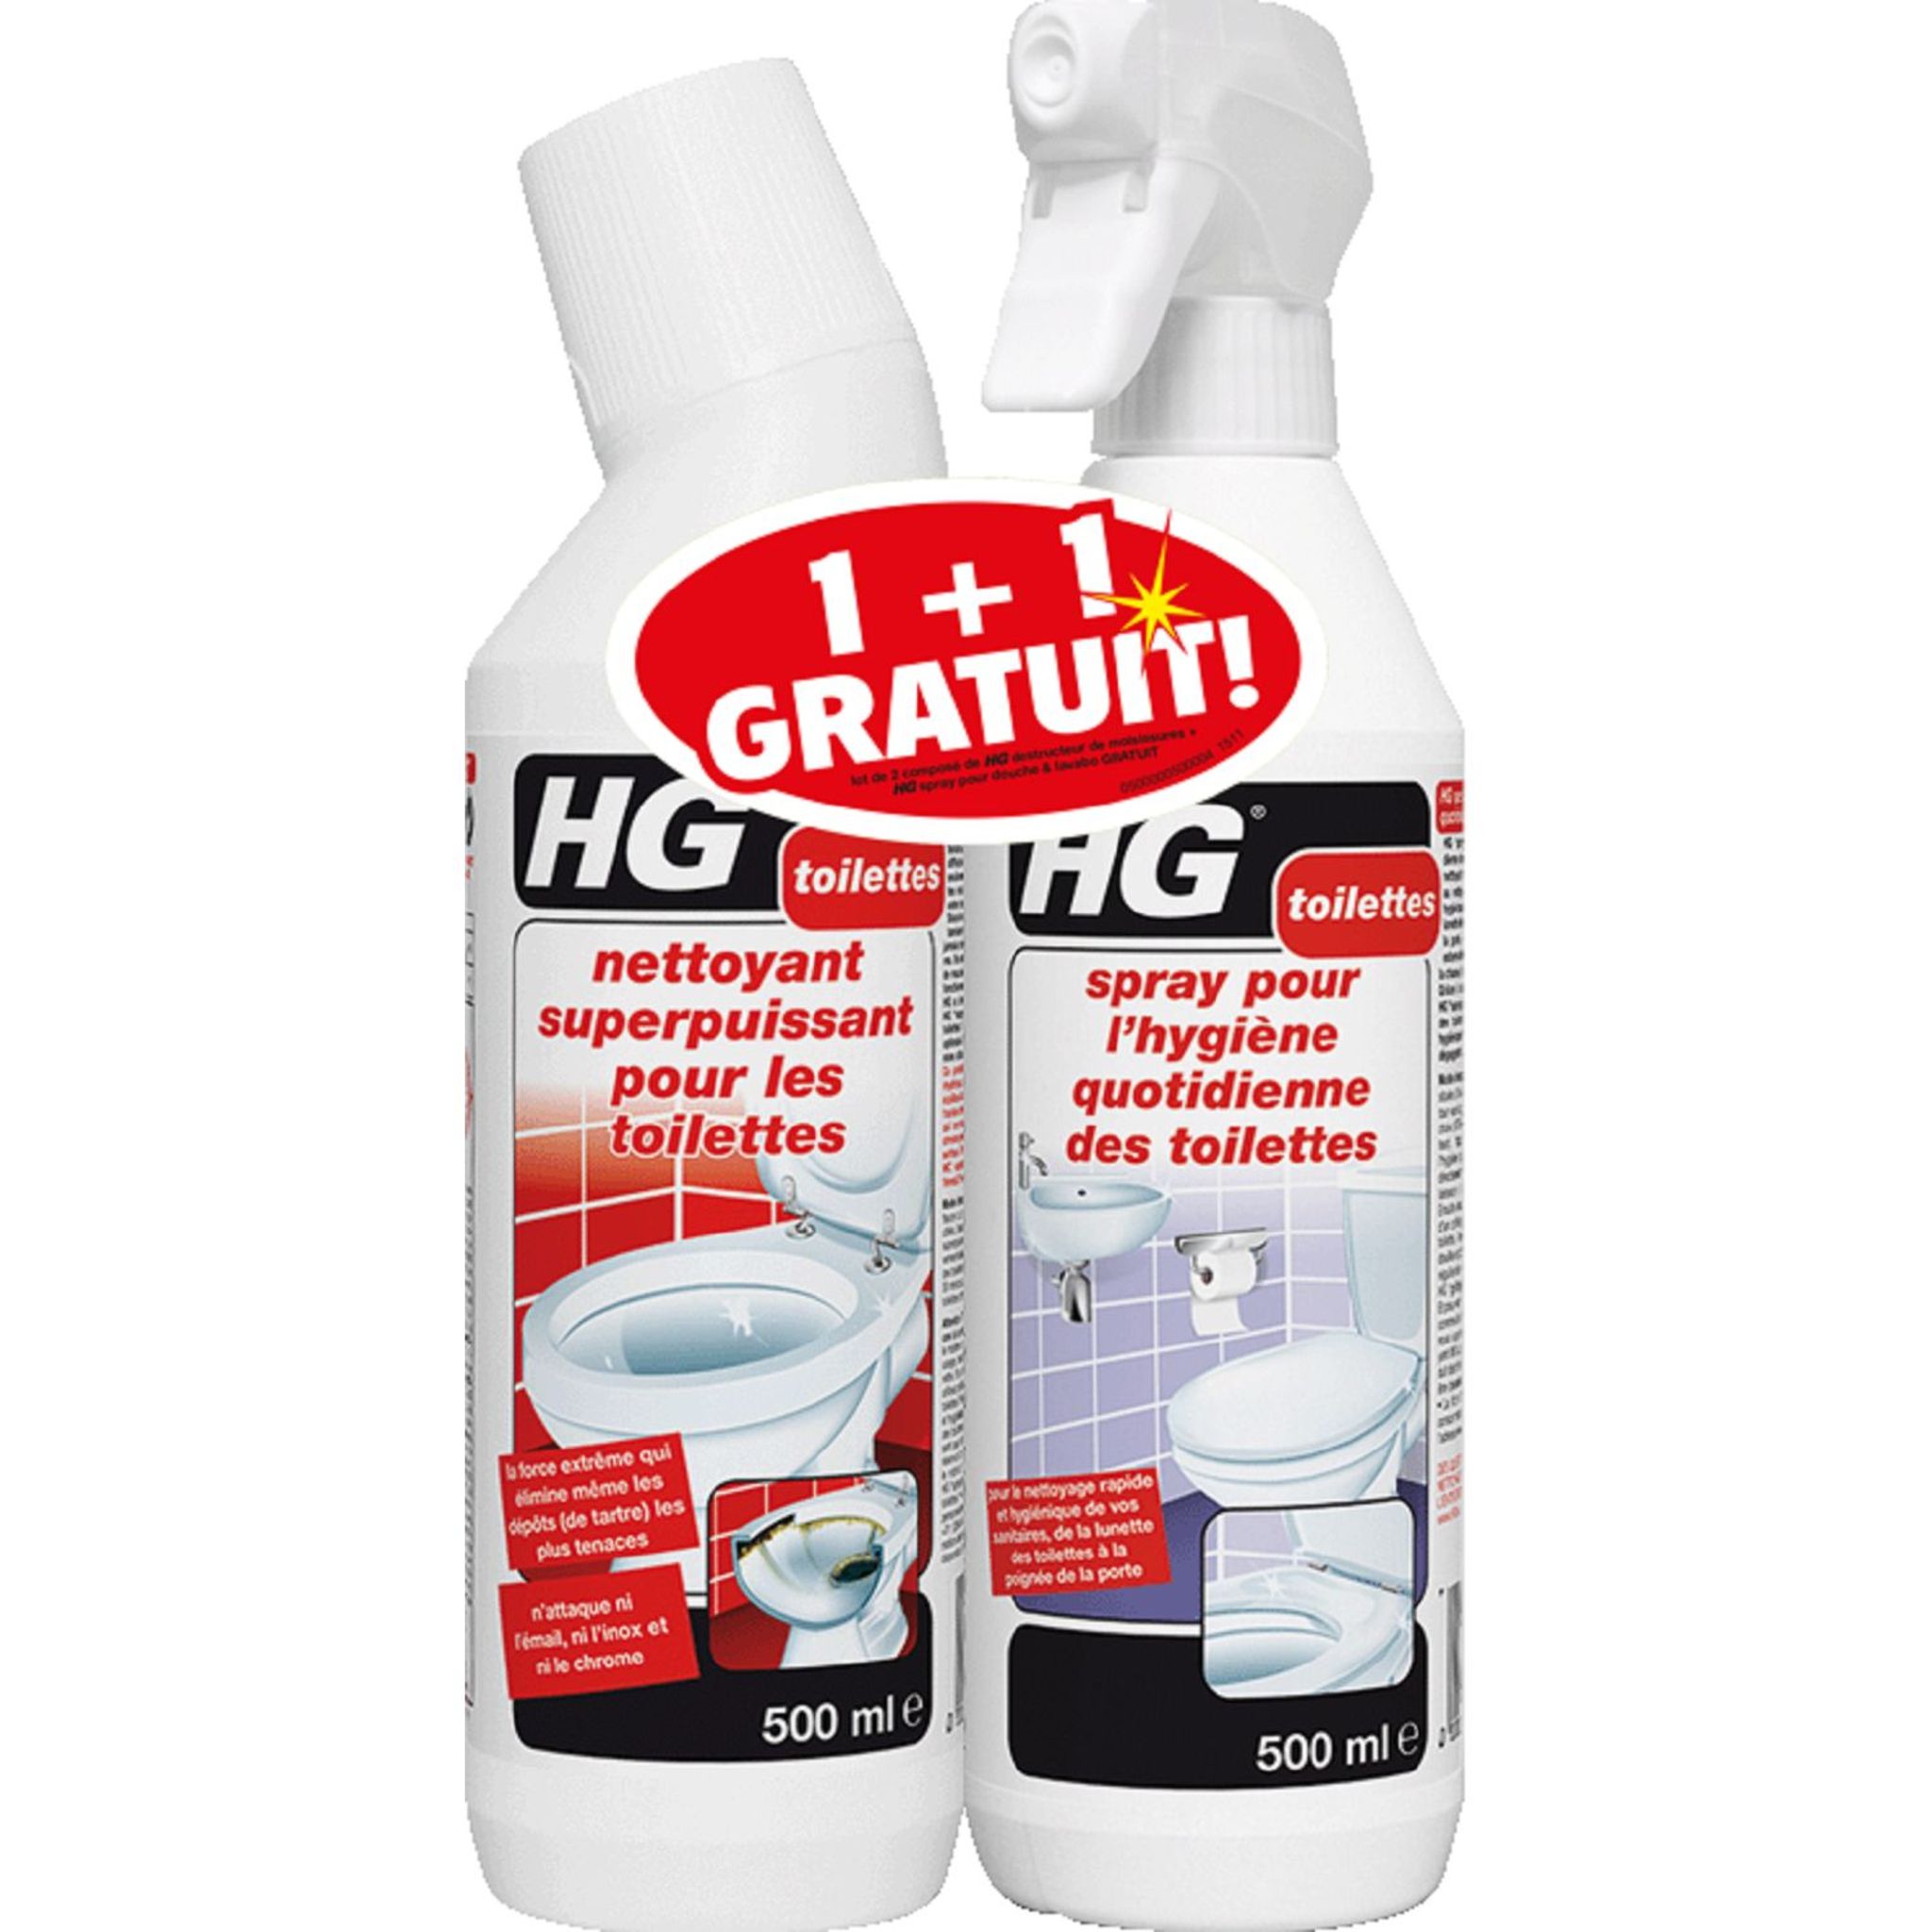 HG HG nettoyant WC et spray toilettes 1+1 pas cher 